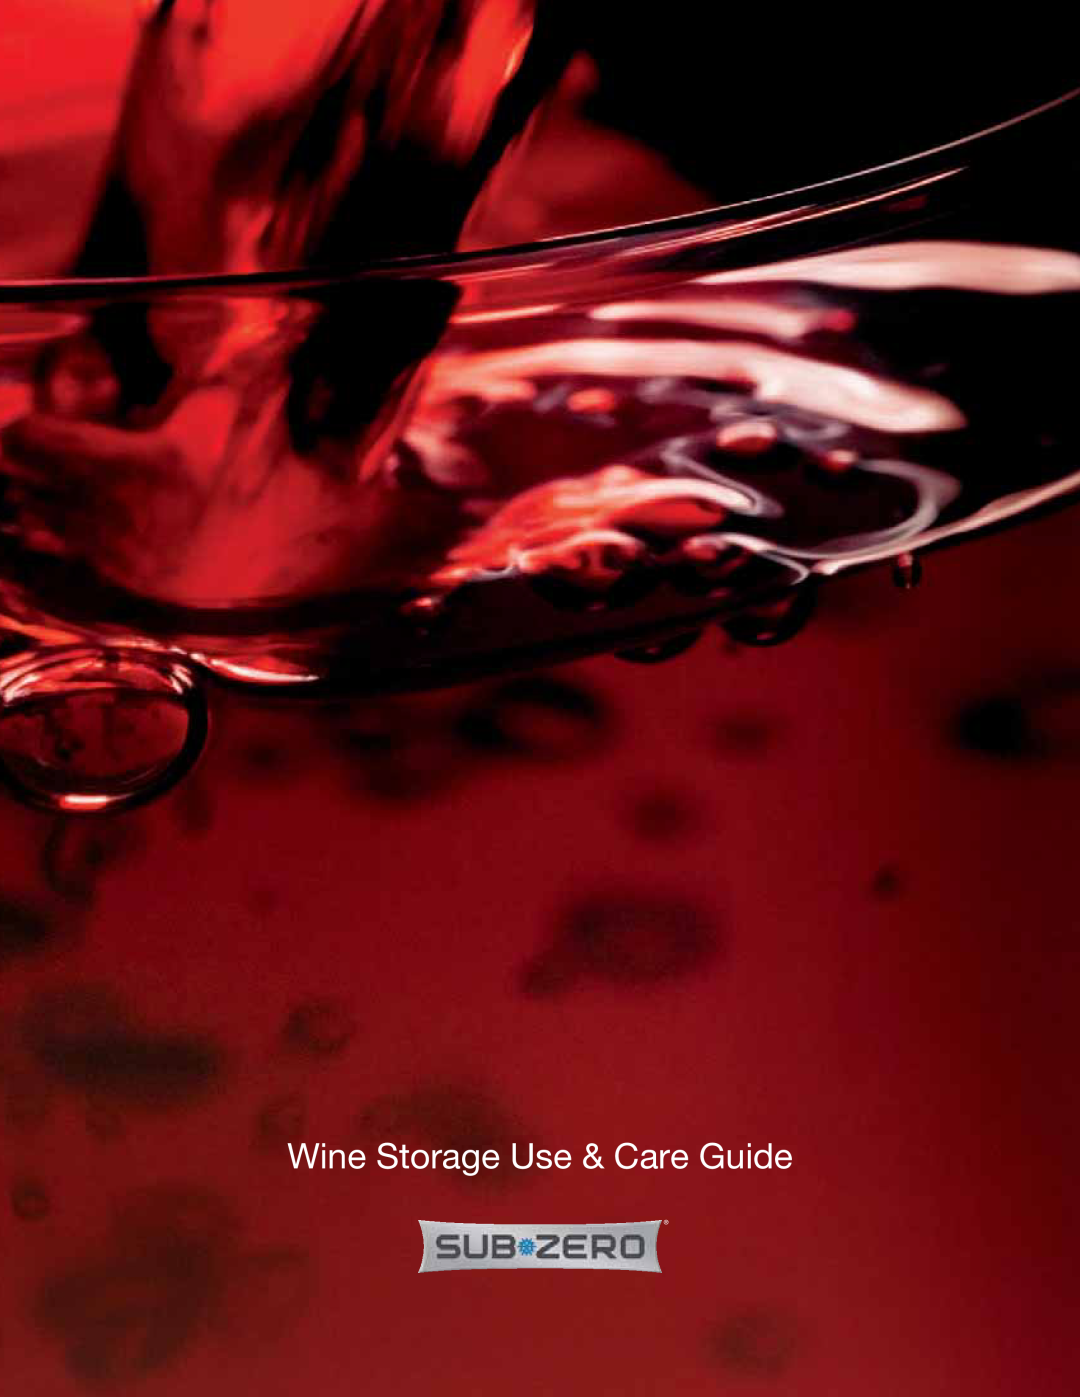 Sub-Zero 427RGLH manual Wine Storage Use & Care Guide 